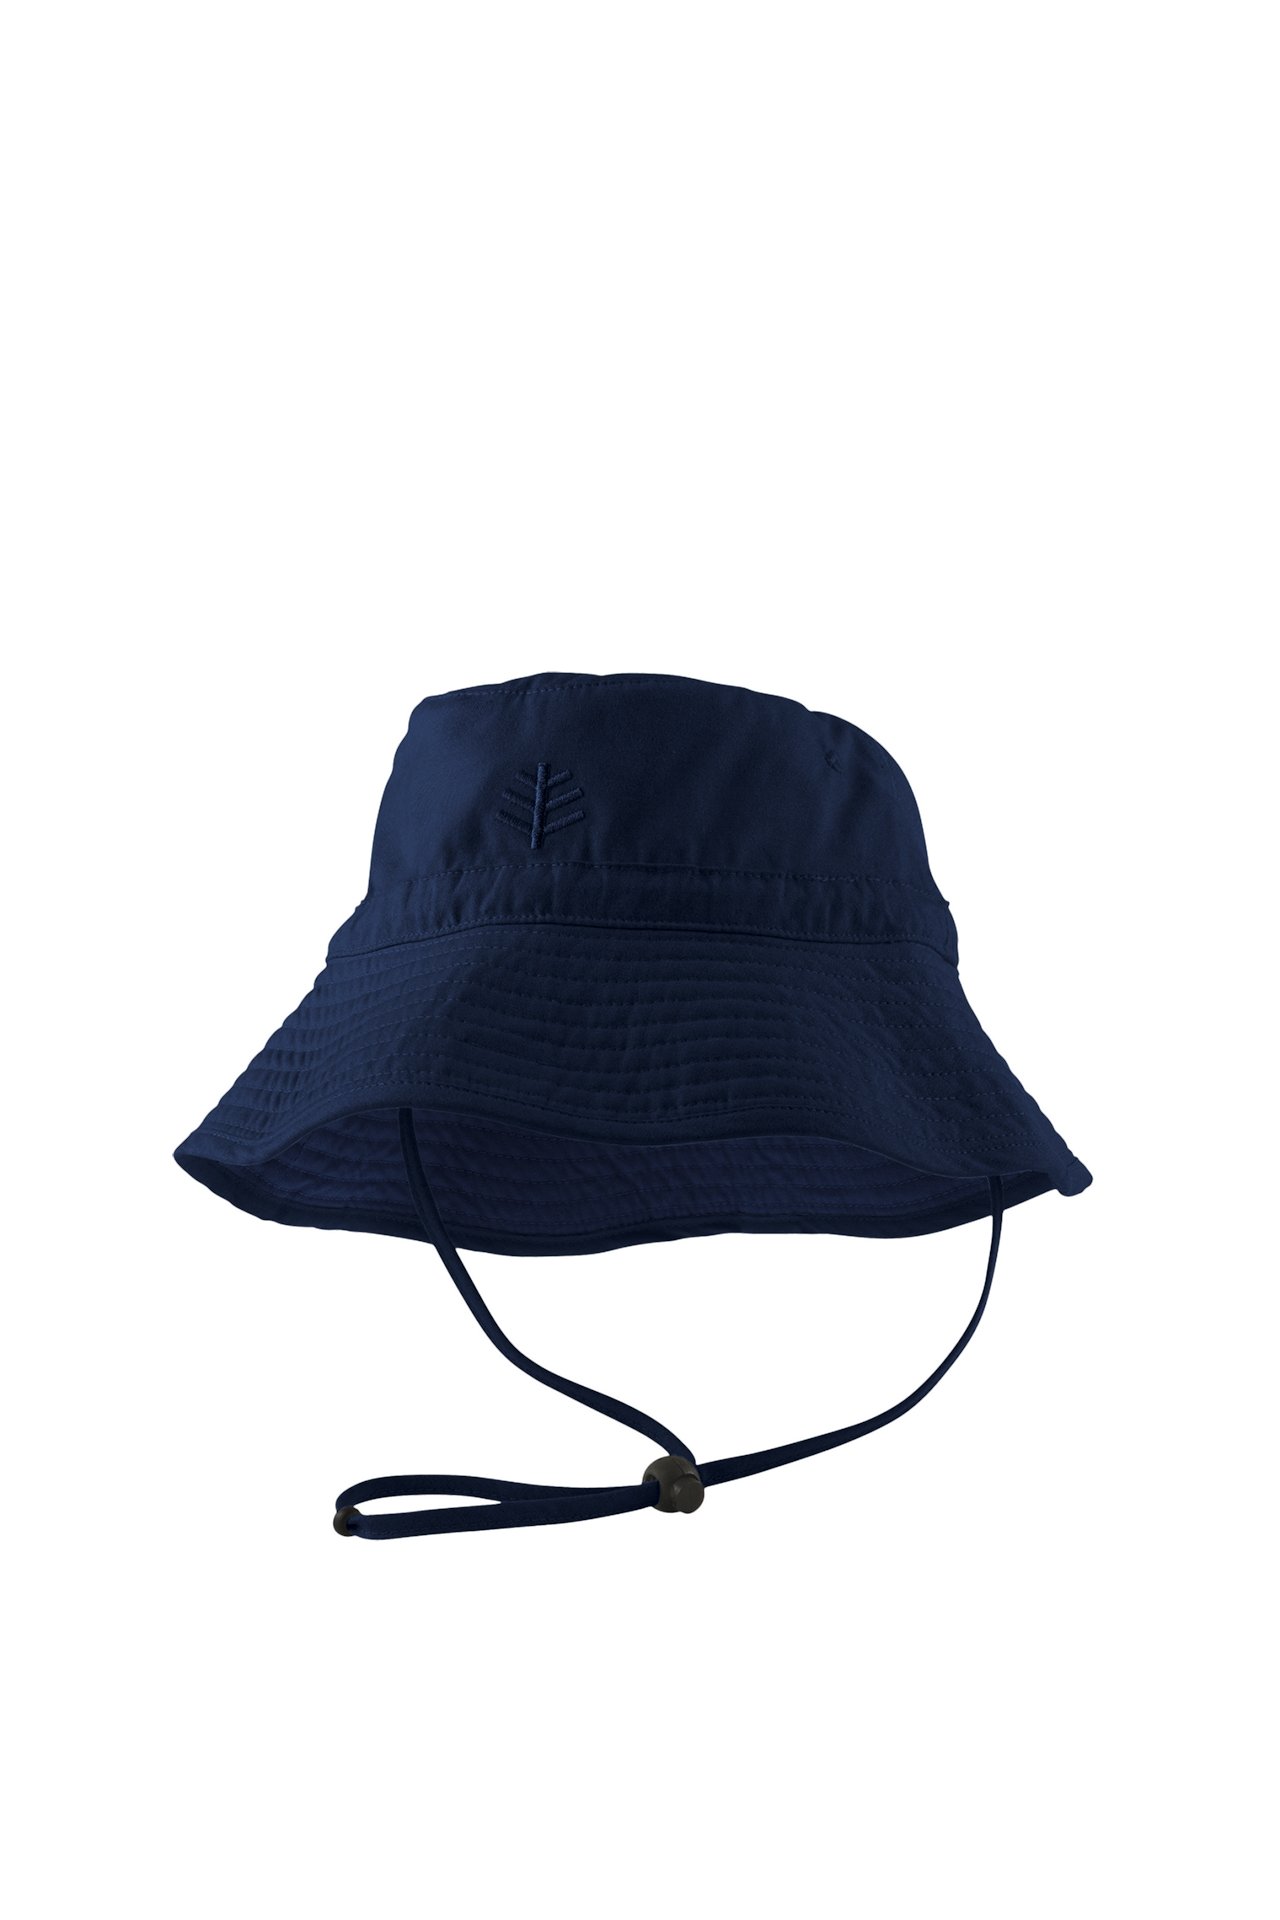 Kids Taylor Chin Strap Hat Sun Protective Coolibar UPF 50 